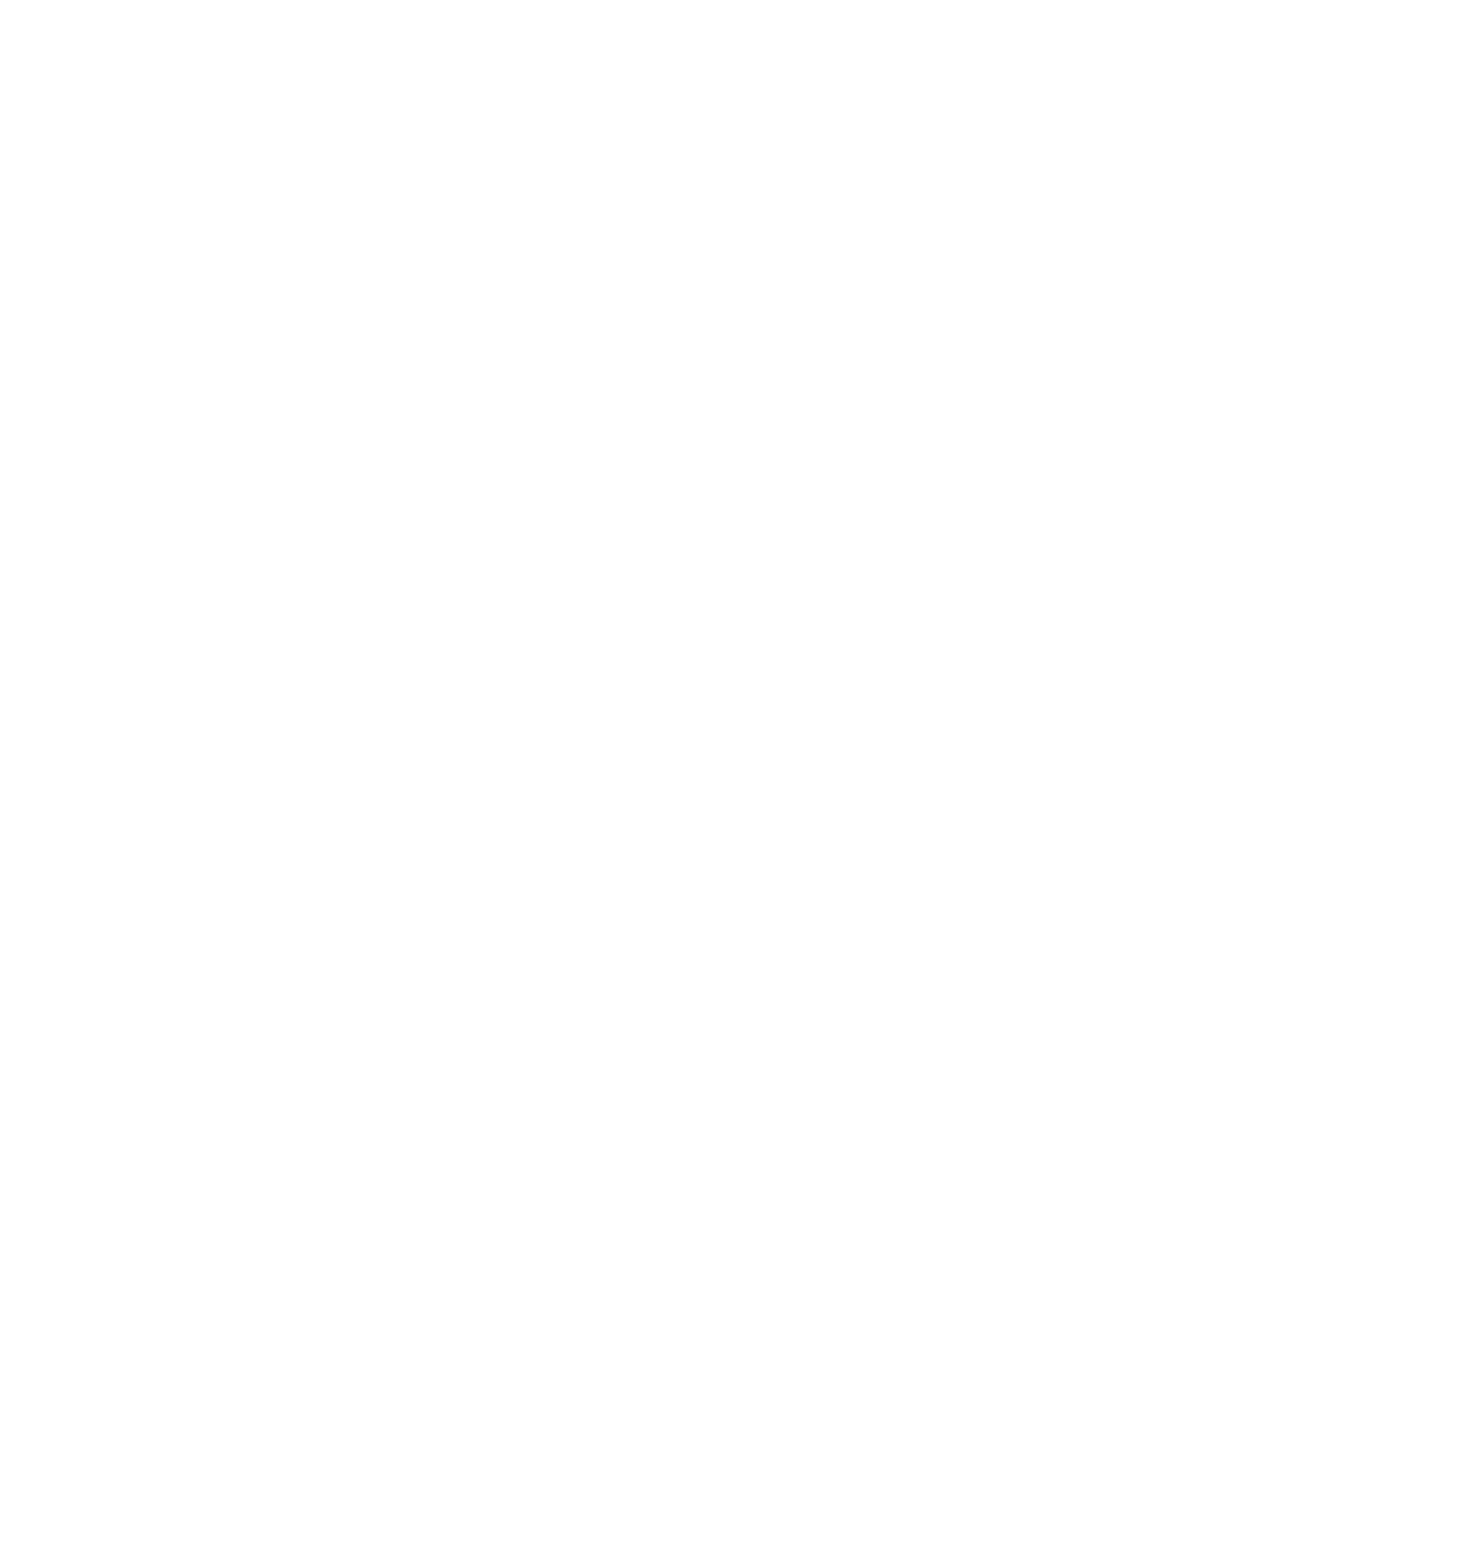 FormFactor logo for dark backgrounds (transparent PNG)